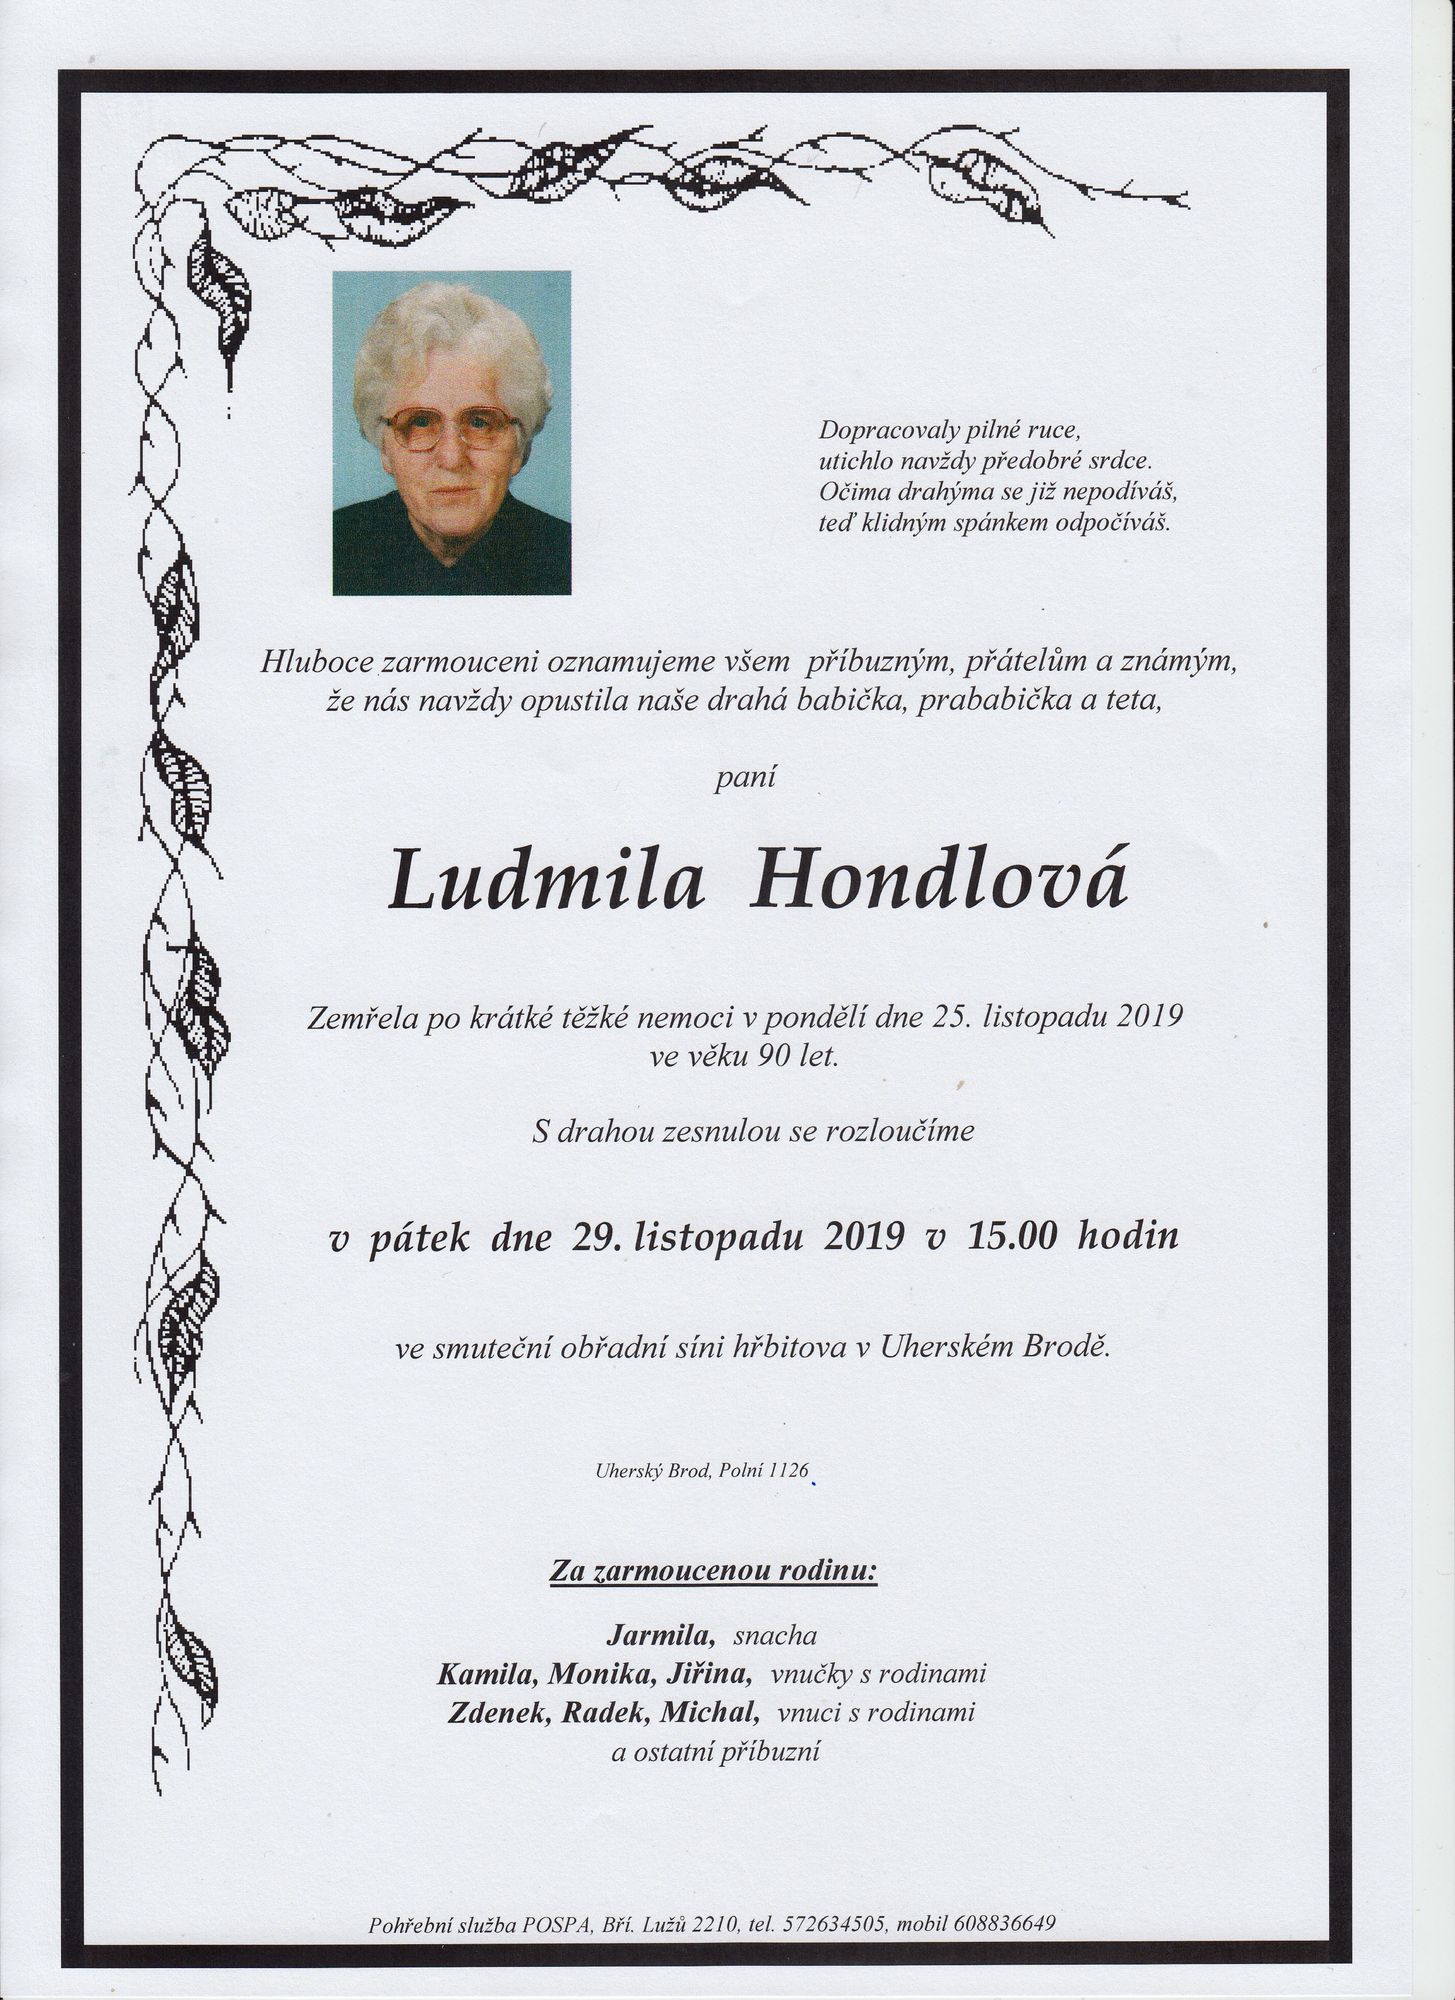 Ludmila Hondlová